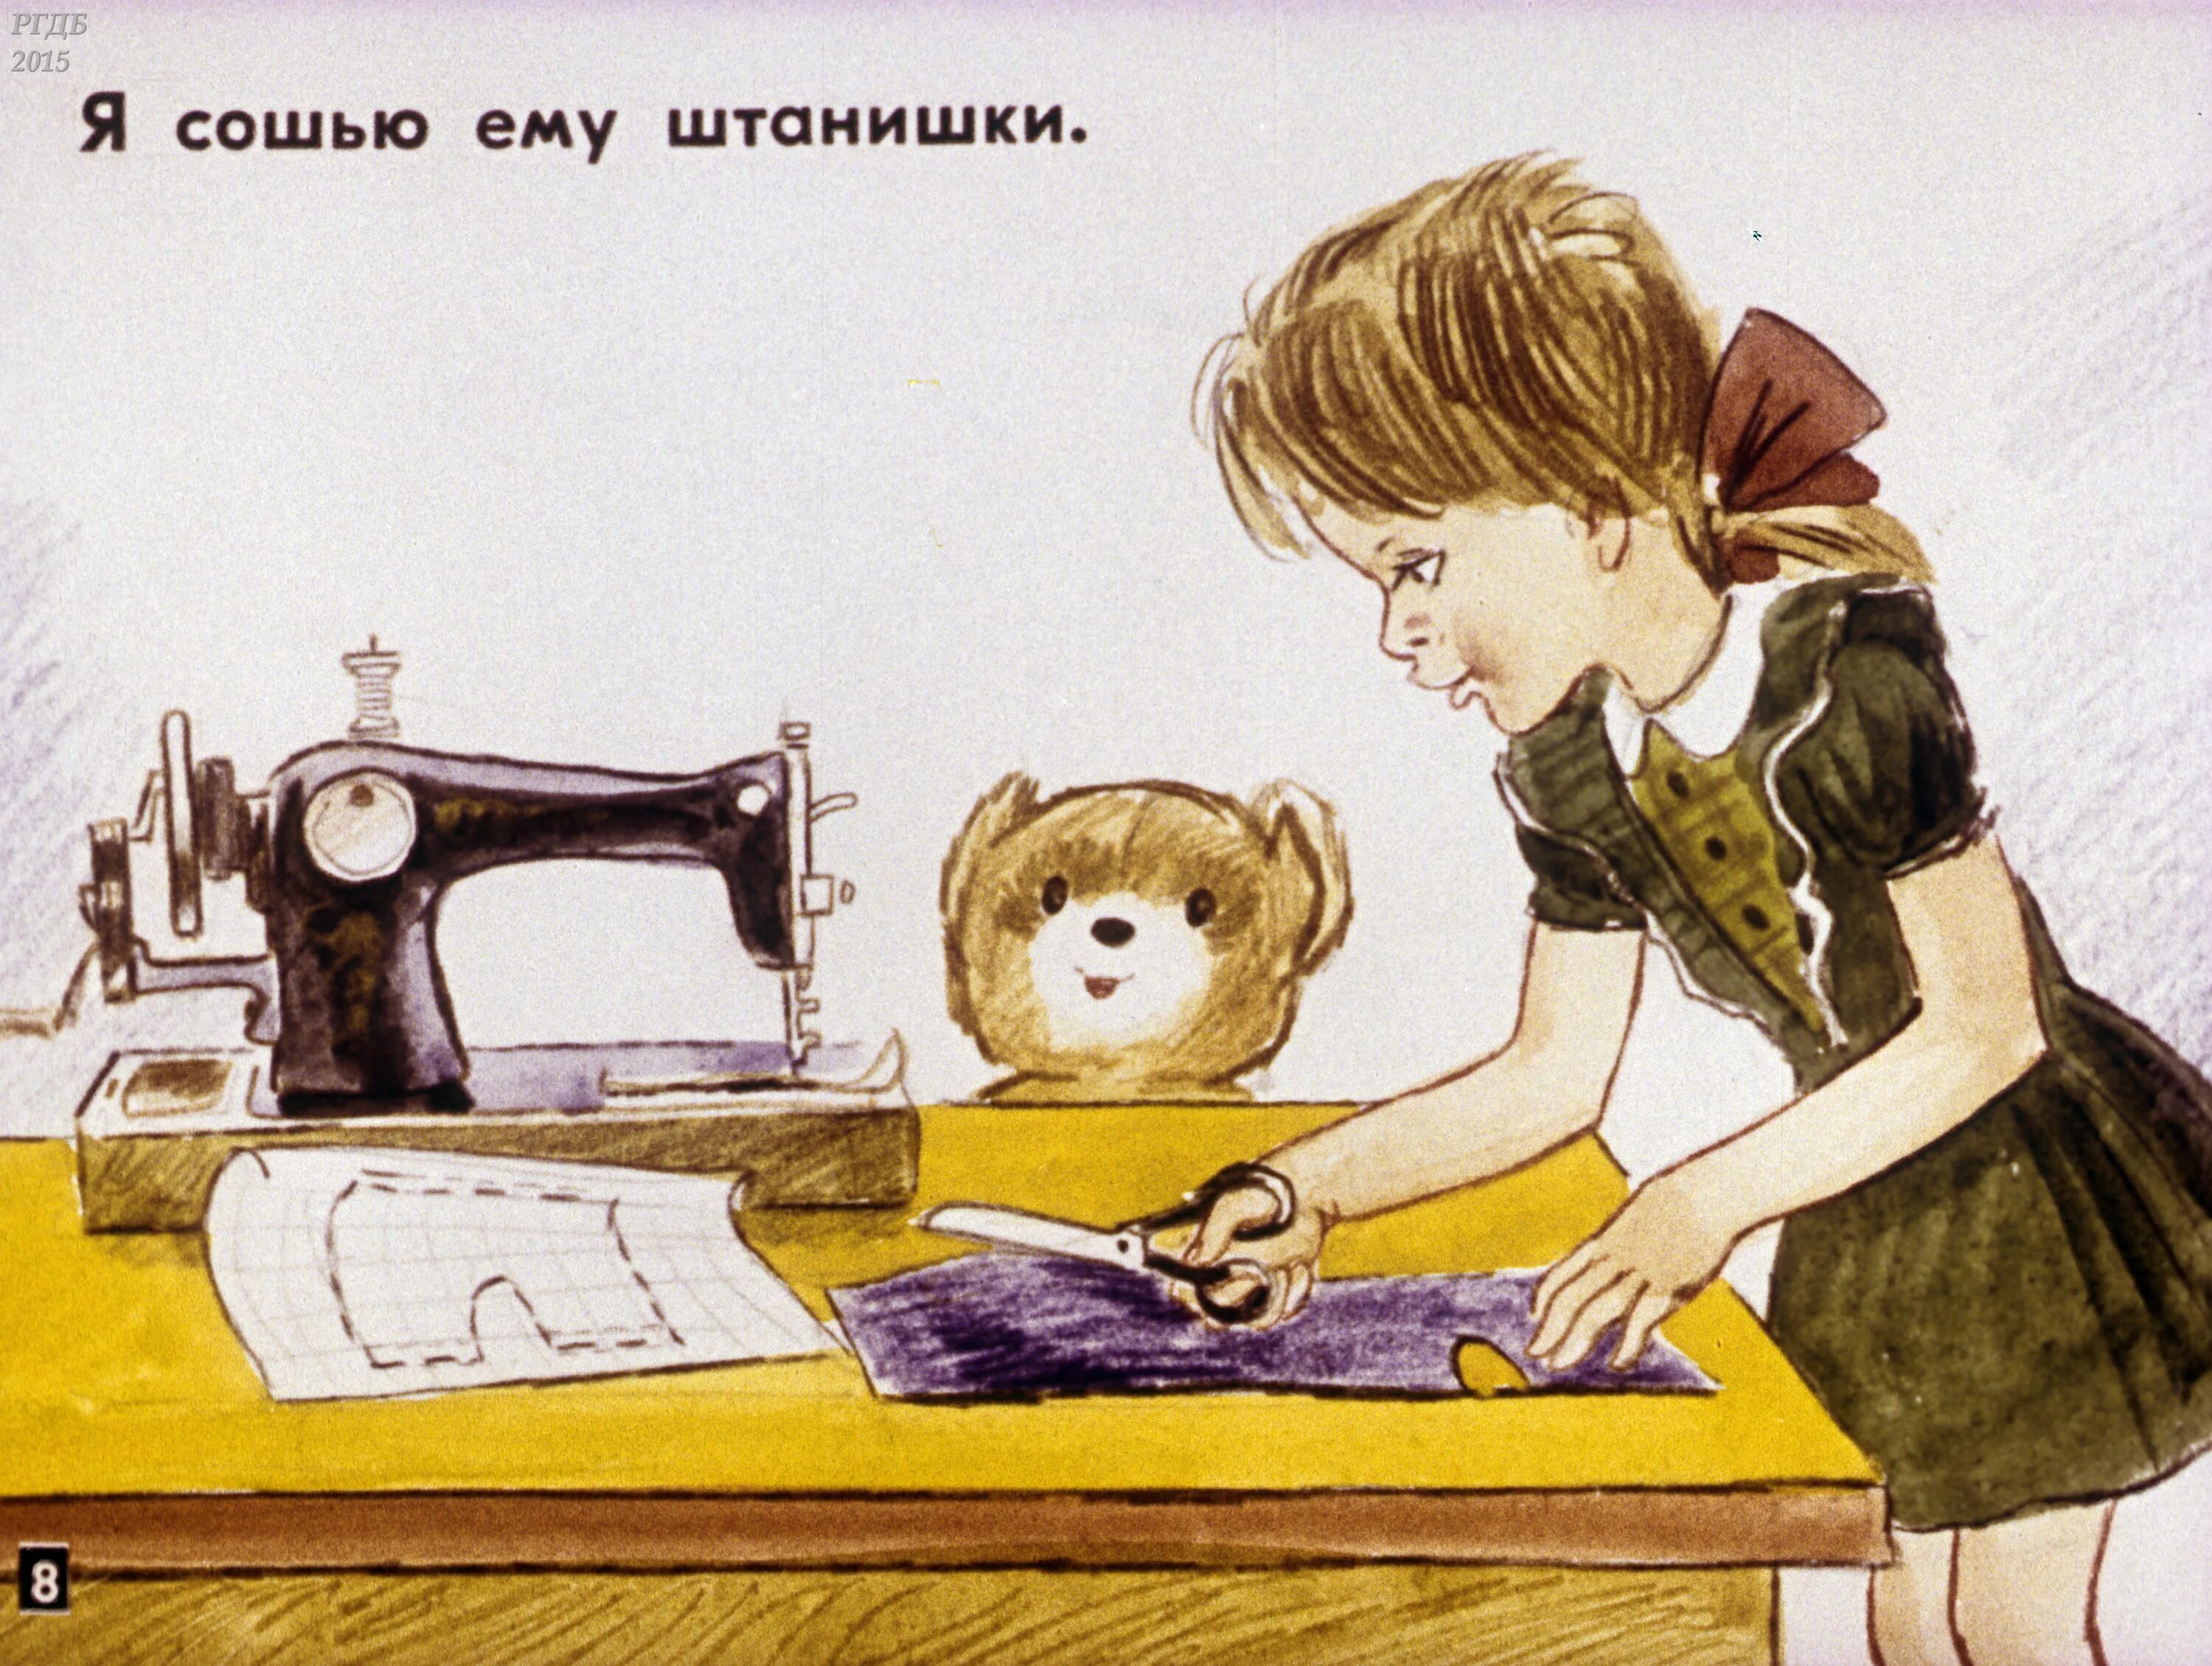 Я сошью листа оригинал. Иллюстрации к стихотворению мой мишка з.Александровой. Мой мишка Александрова иллюстрации. Иллюстрация к стихотворению мой мишка. Девочка шьет.